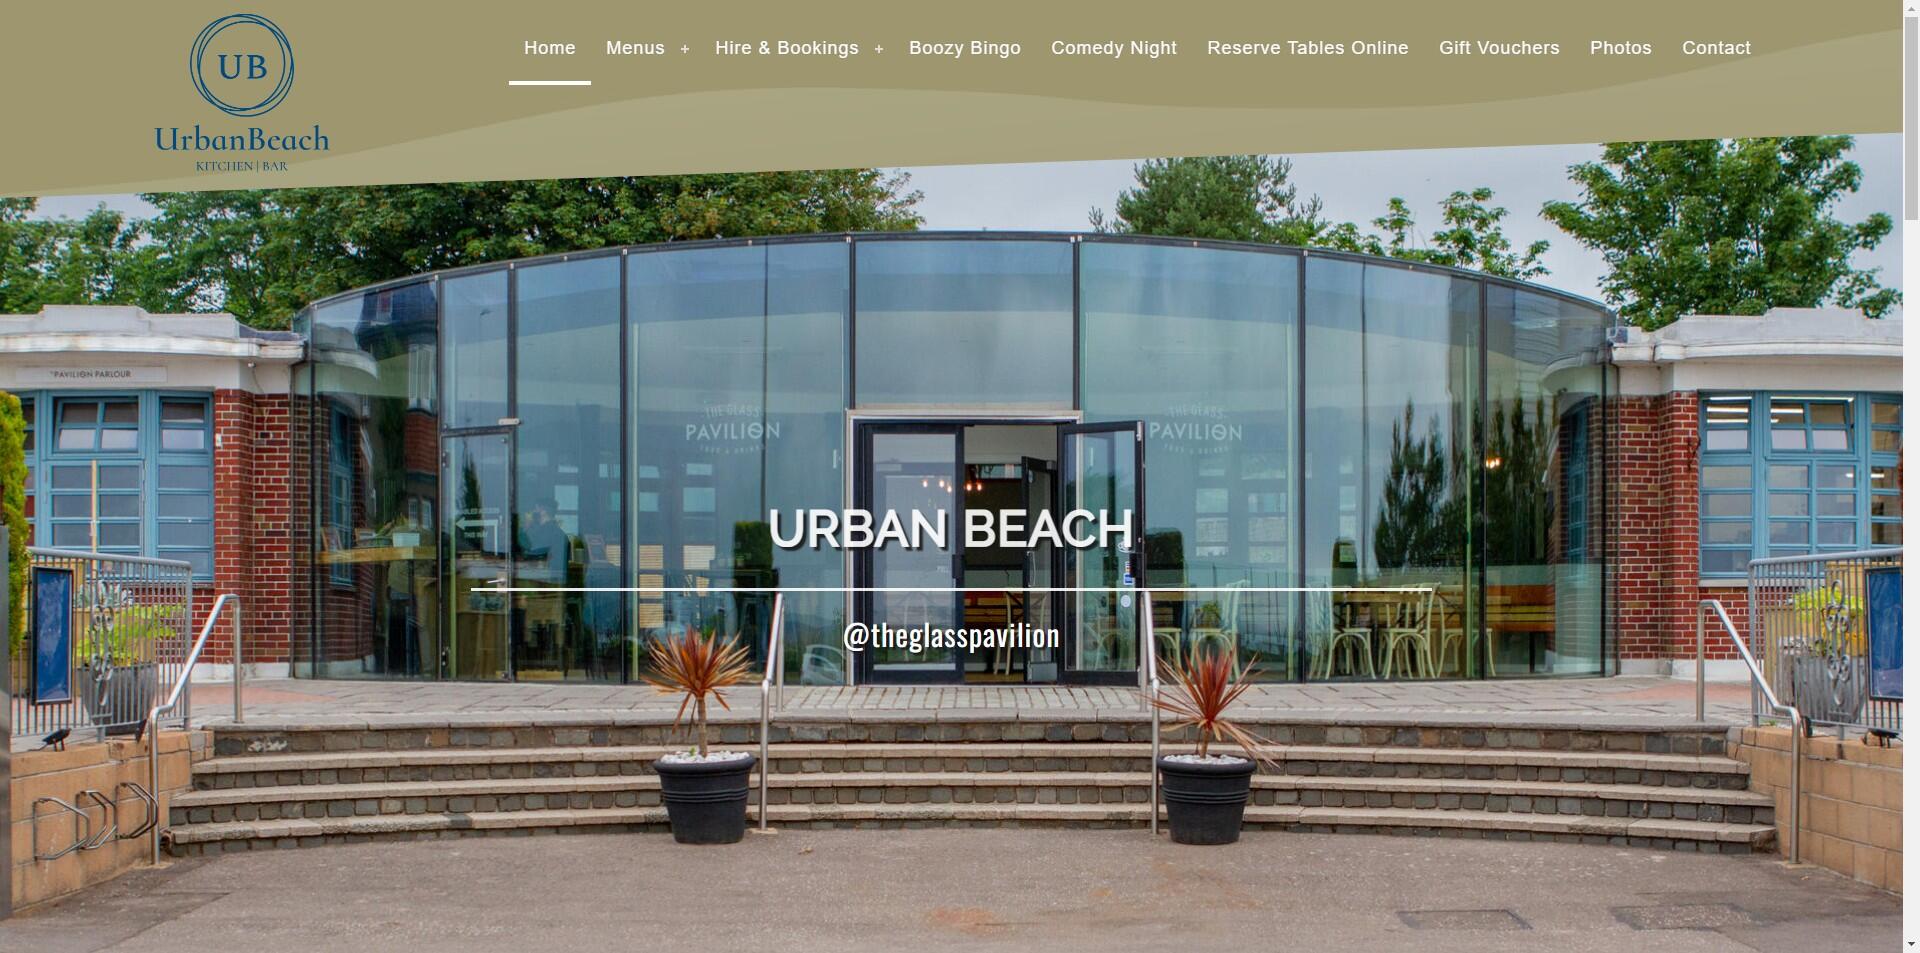 website designed for Urban Beach Glass Pavilion